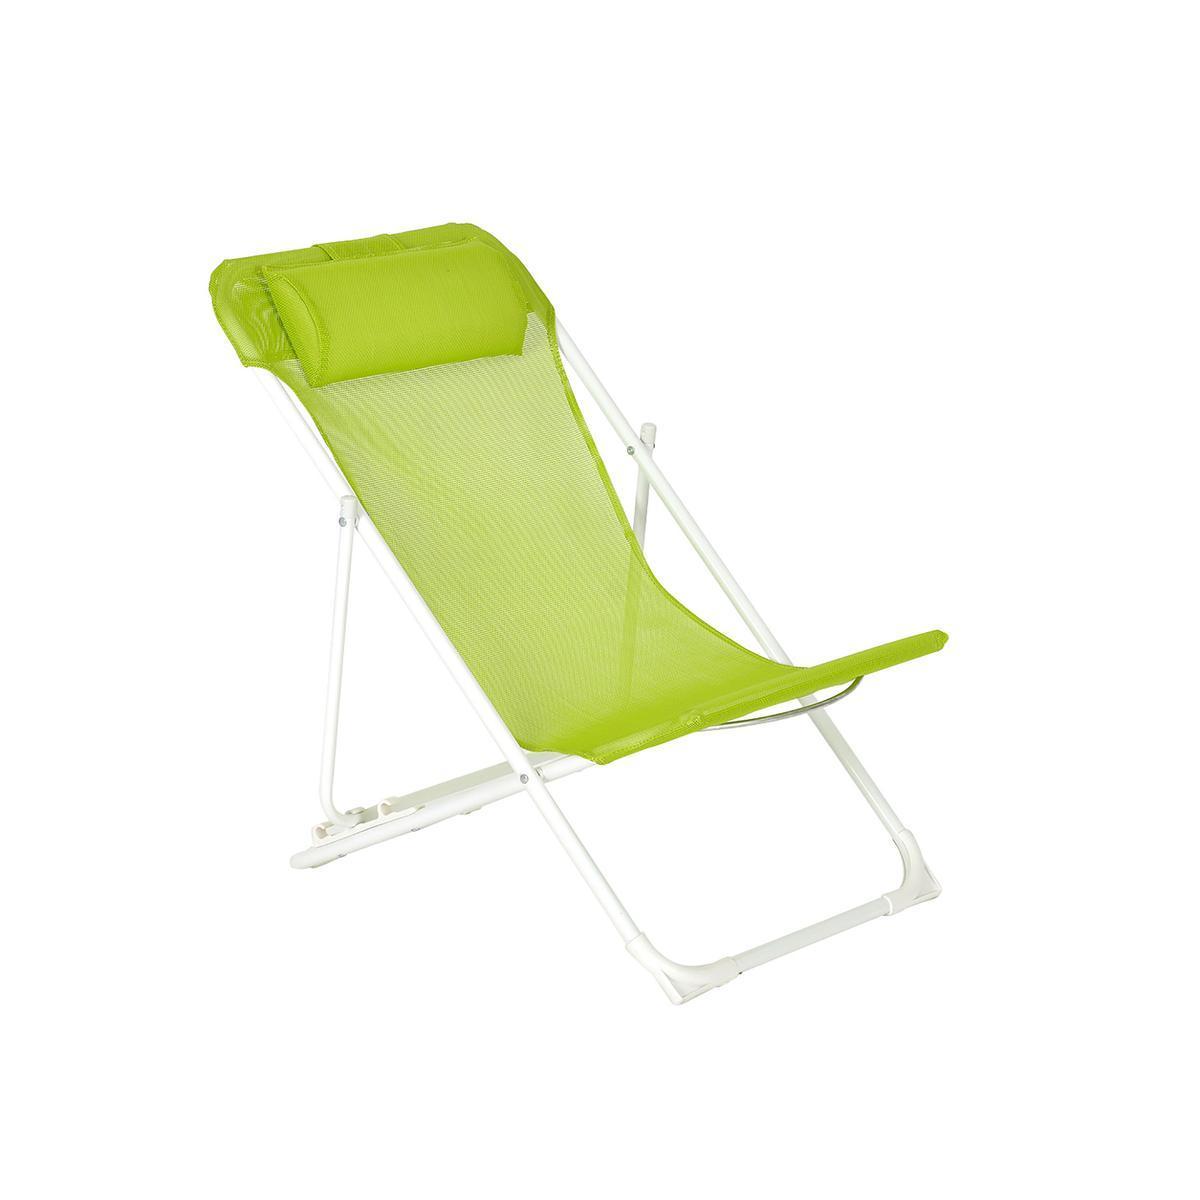 Chaise longue enfant - Acier et textilène - 56,5 x 40 x H 60 cm - Vert anis